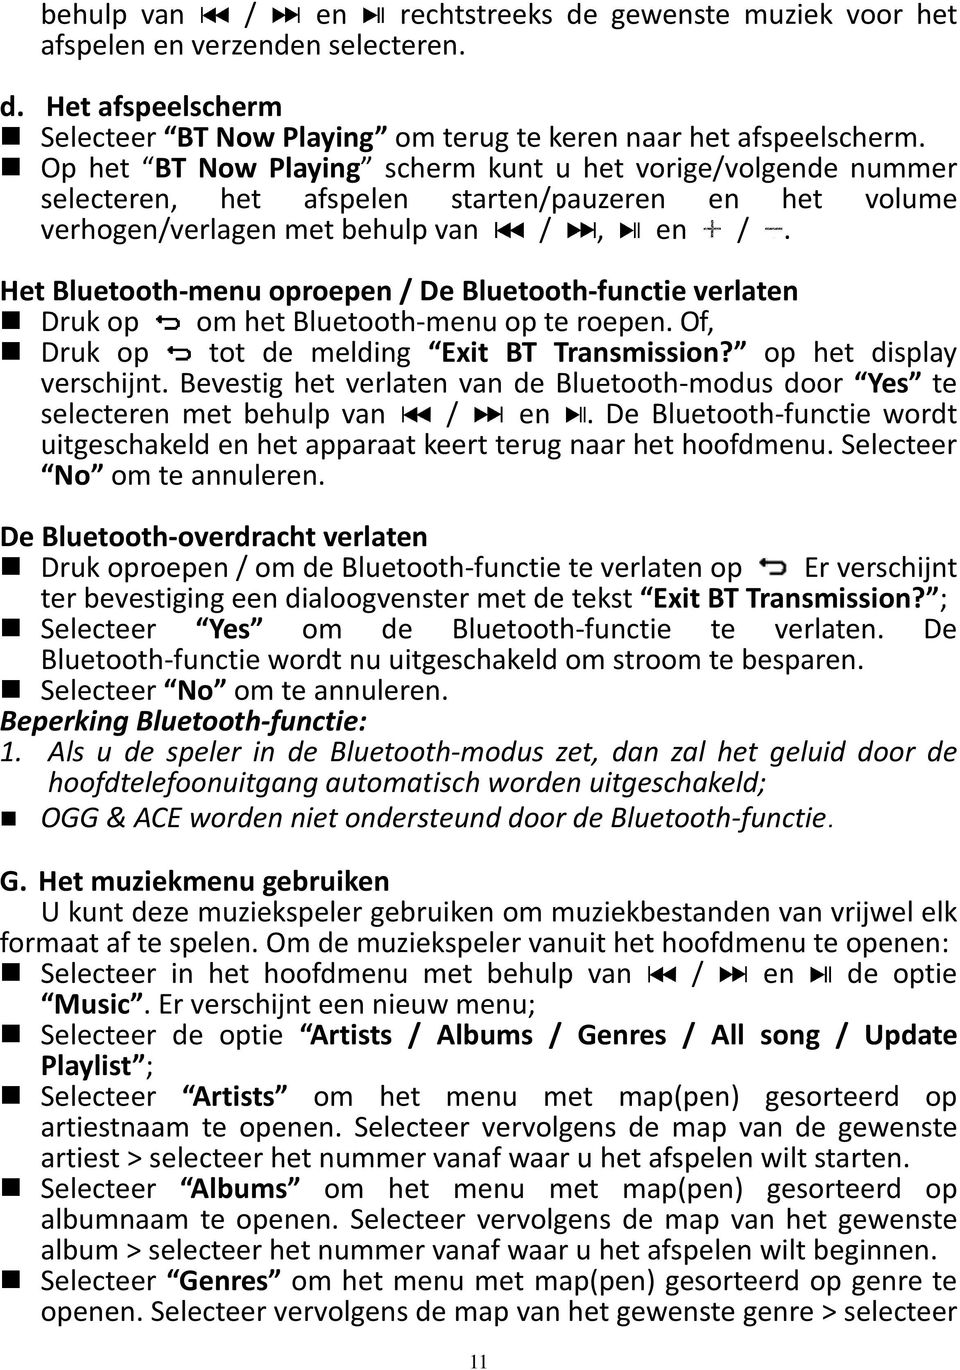 Het Bluetooth-menu oproepen / De Bluetooth-functie verlaten Druk op om het Bluetooth-menu op te roepen. Of, Druk op tot de melding Exit BT Transmission? op het display verschijnt.